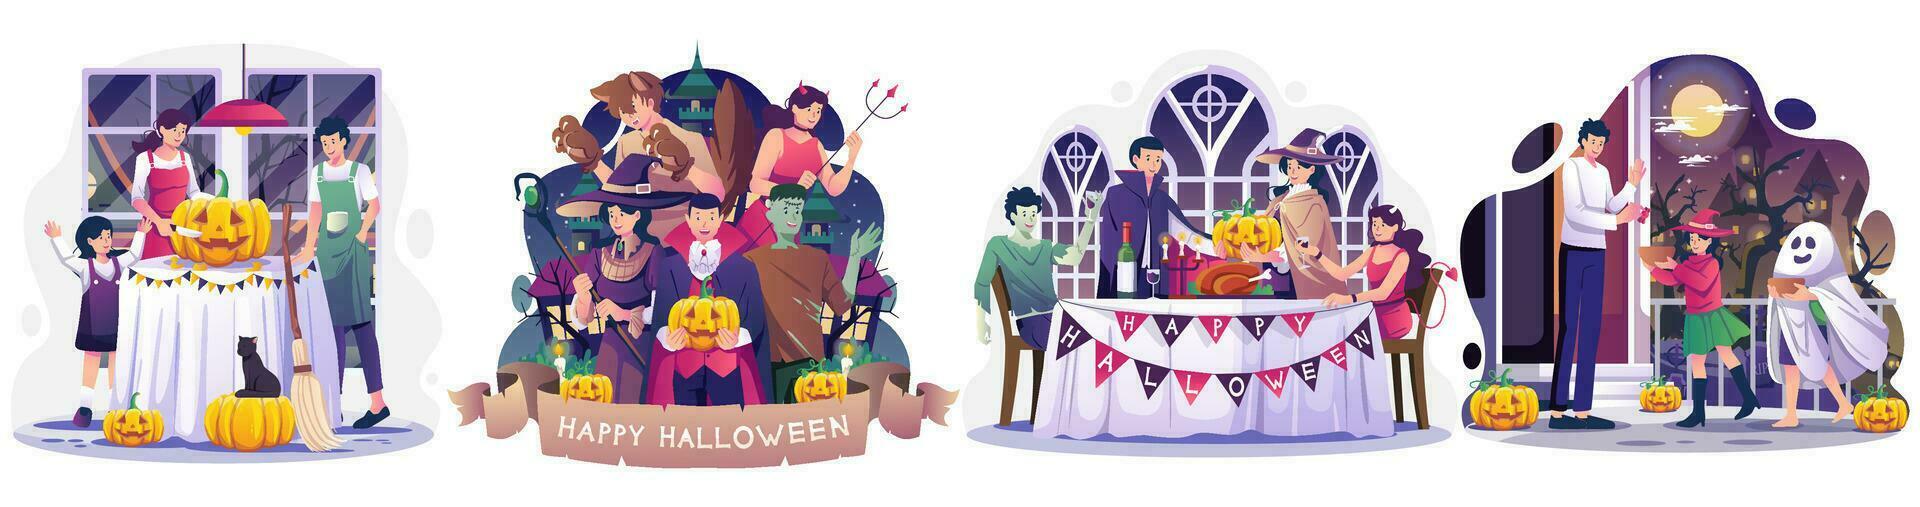 einstellen von Halloween Konzept Illustration mit Menschen im Kostüme feiern Halloween Illustration vektor